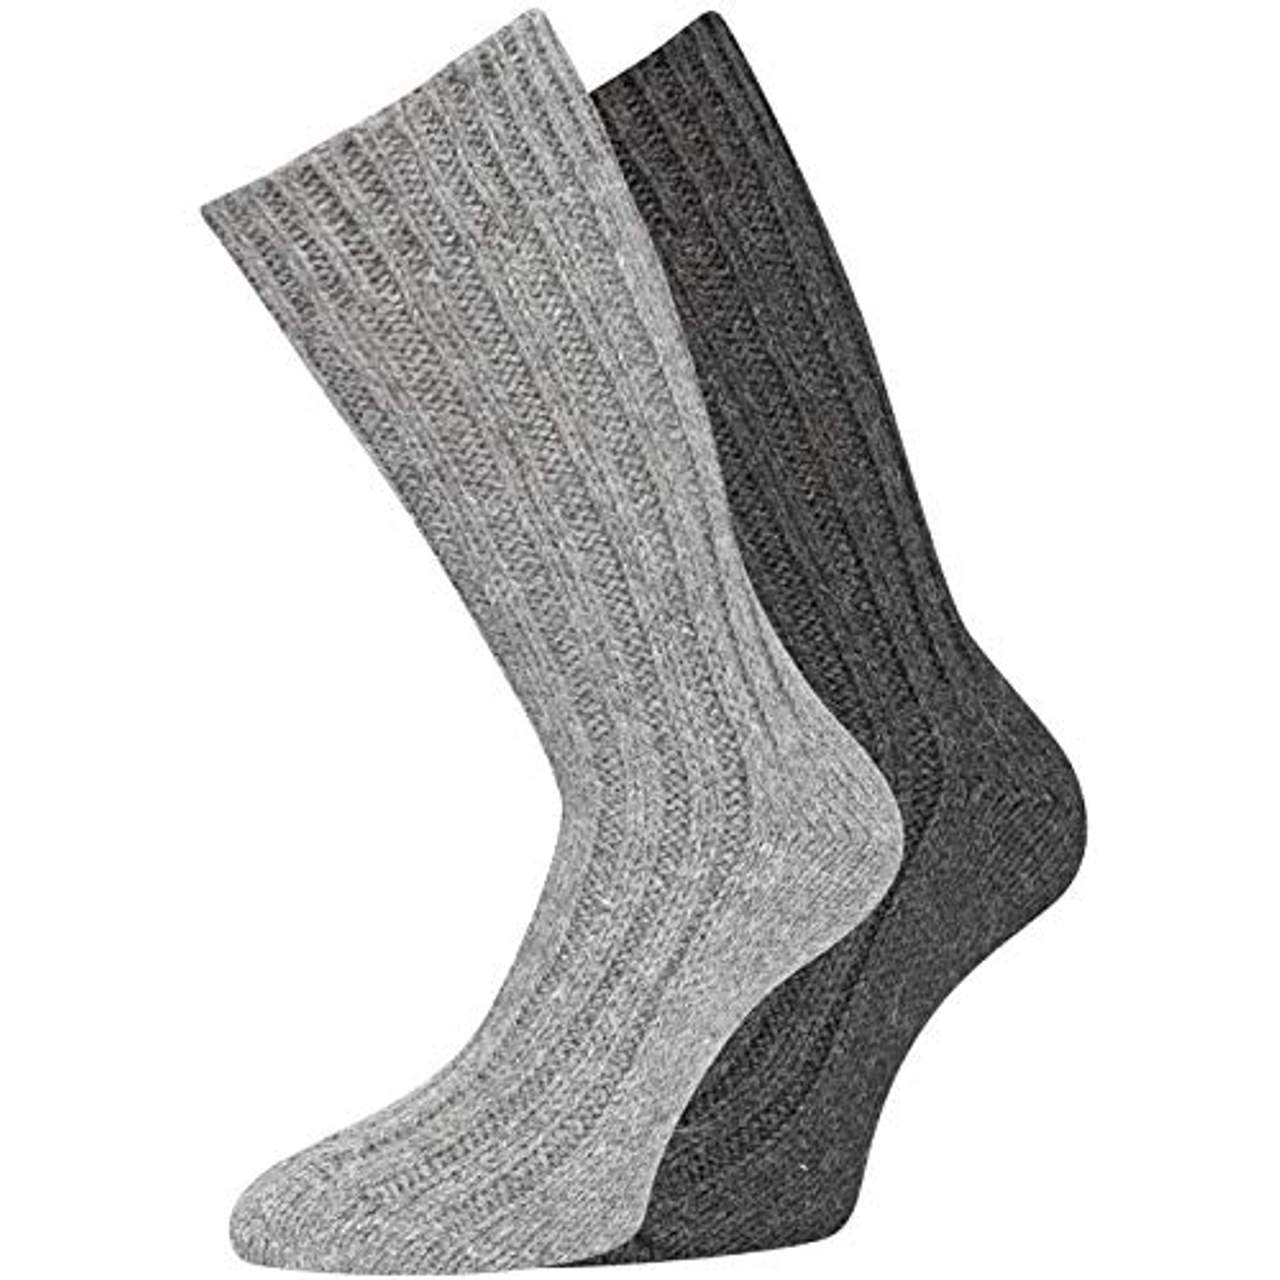 4 Paar Alpaka Socken Wintersocken warm weich soft